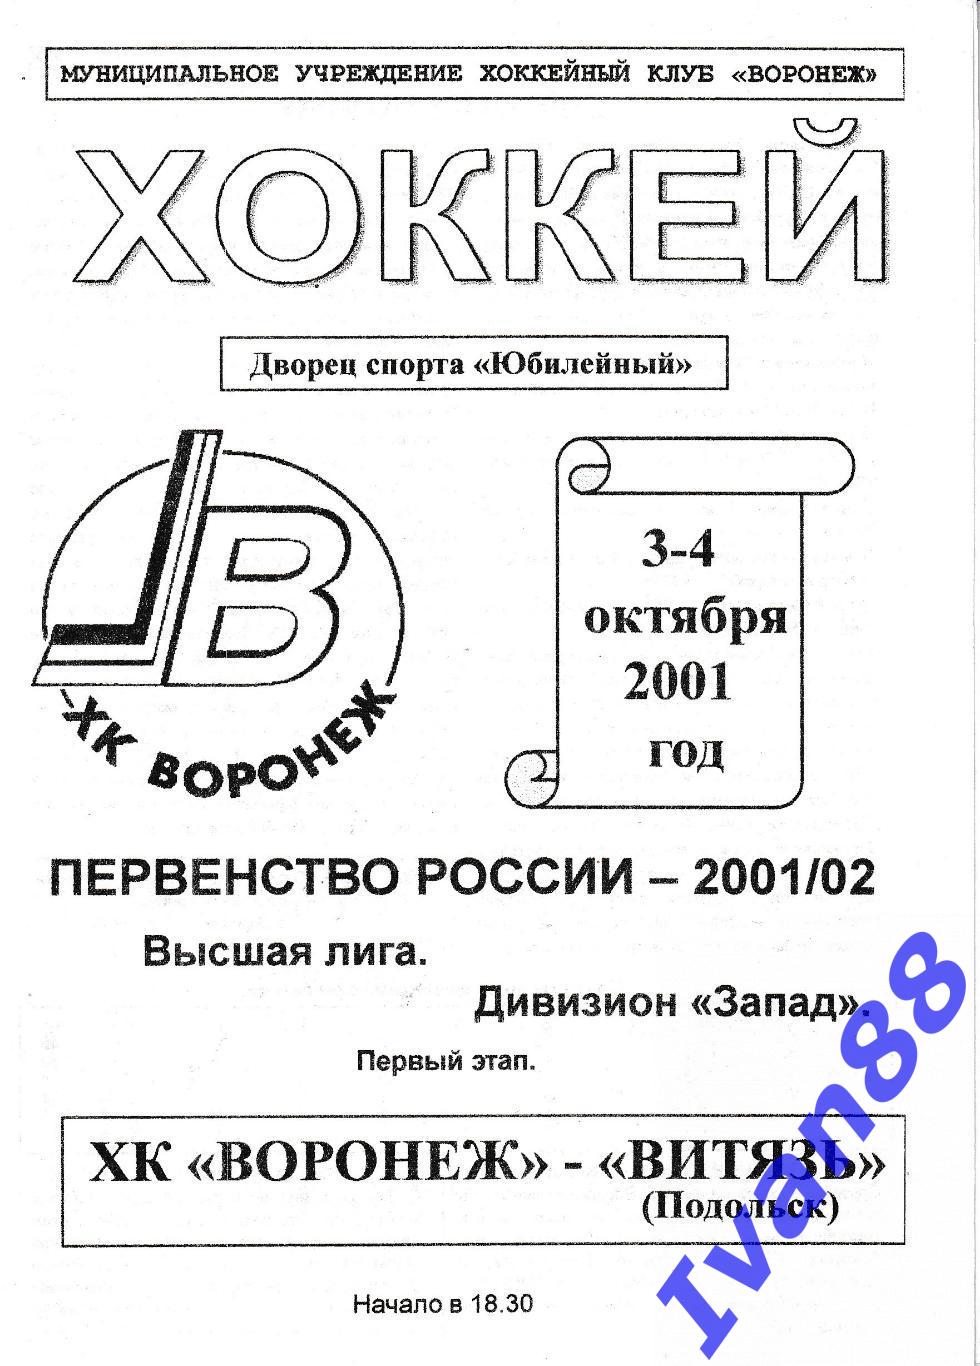 ХК Воронеж - Витязь Подольск 3-4 октября 2001